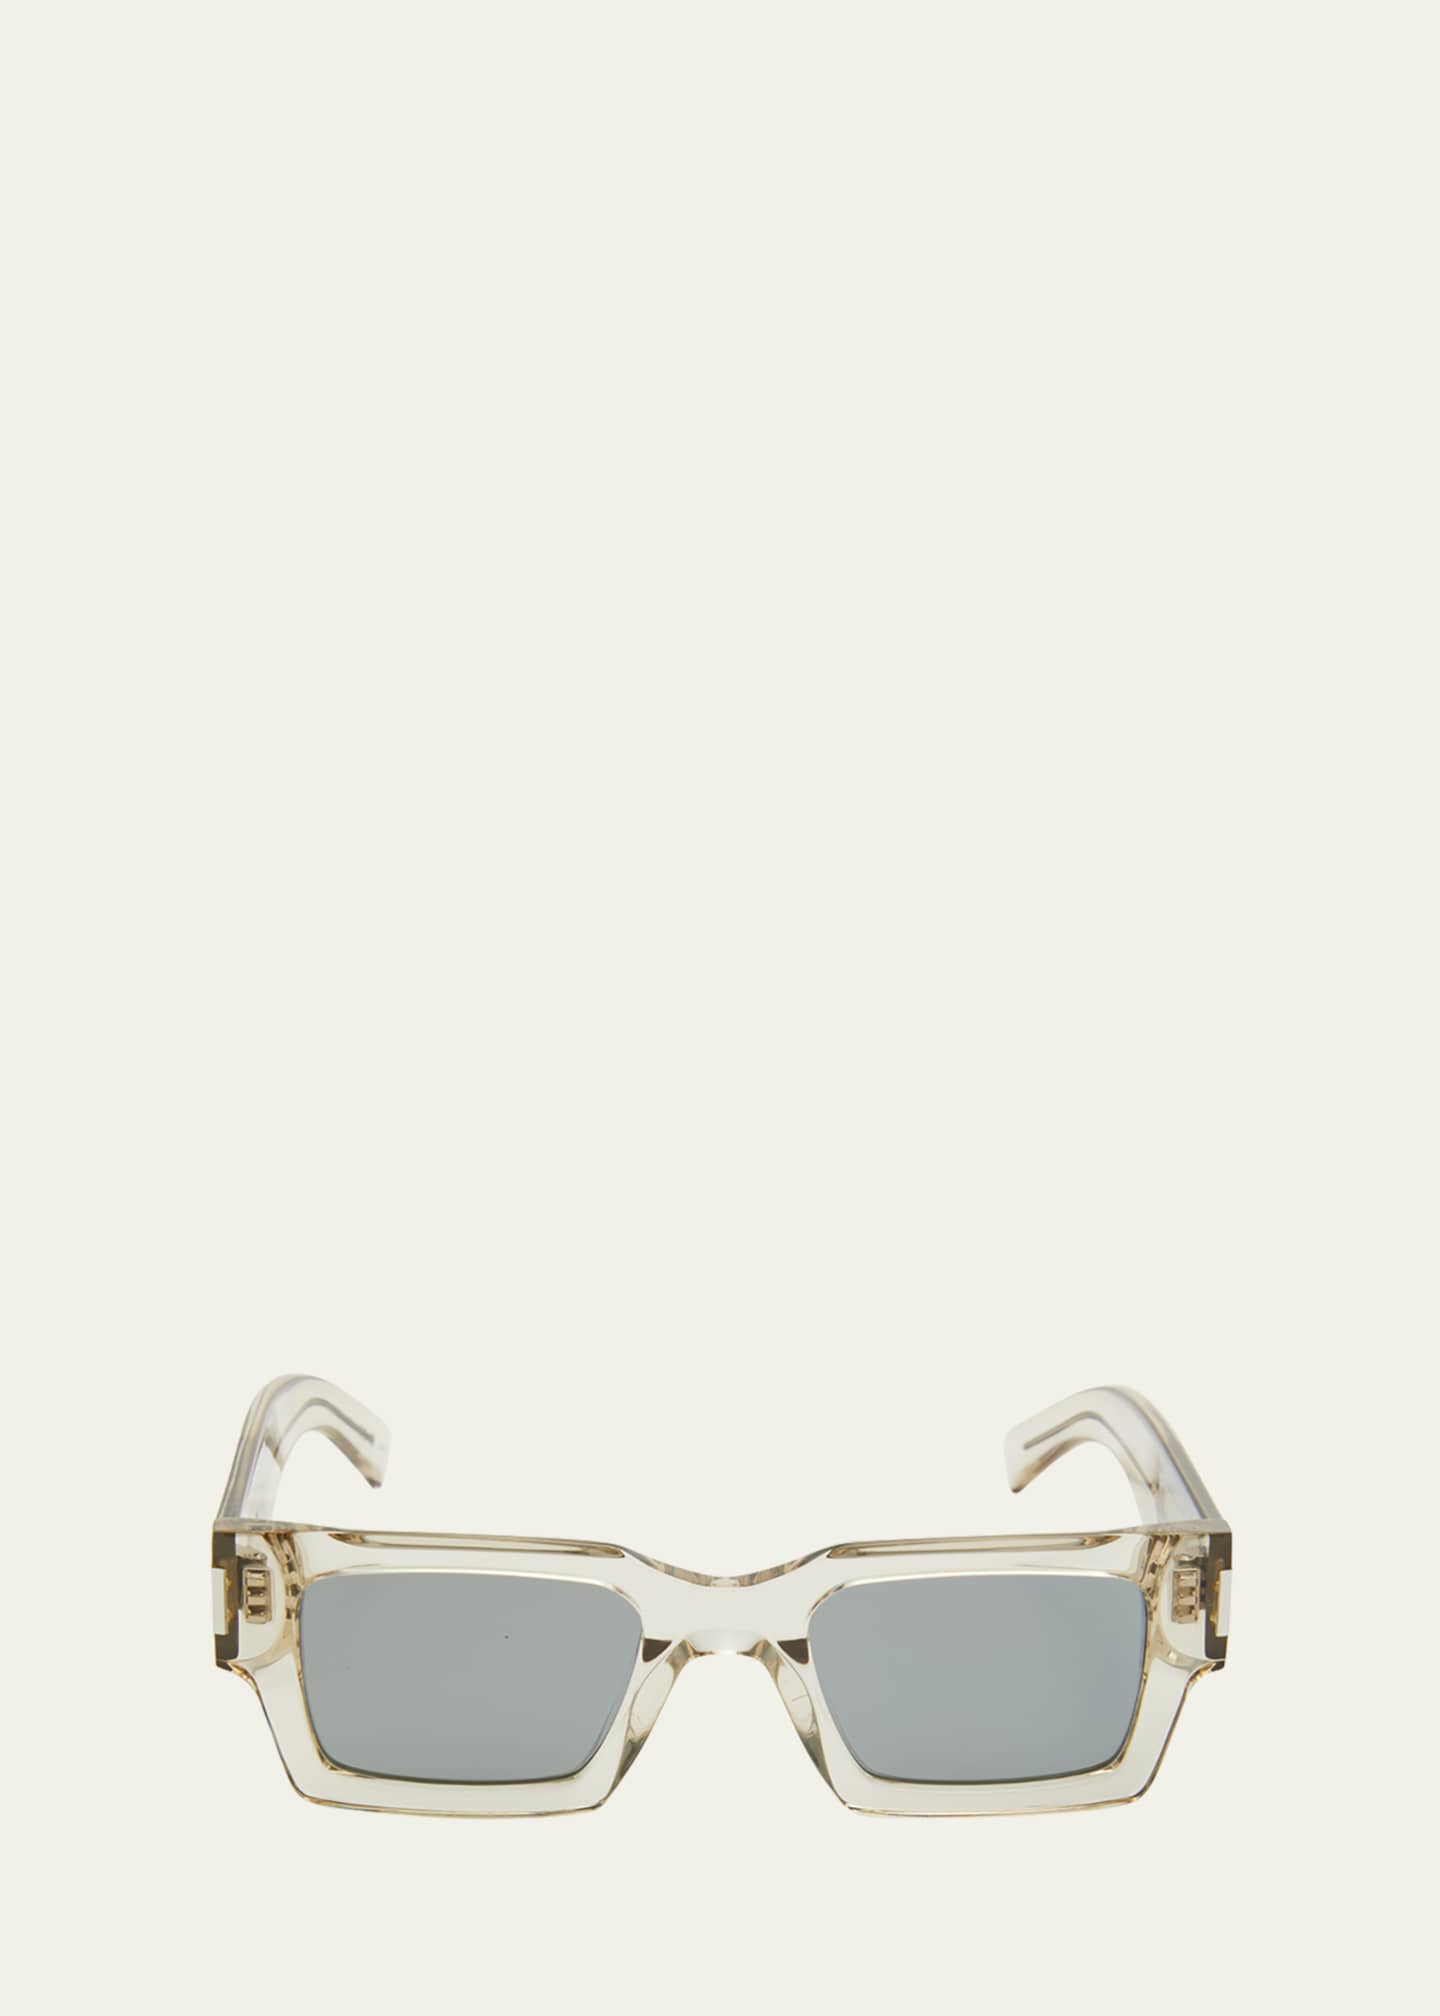 Saint Laurent Semi-Transparent Square Acetate Sunglasses - Bergdorf Goodman